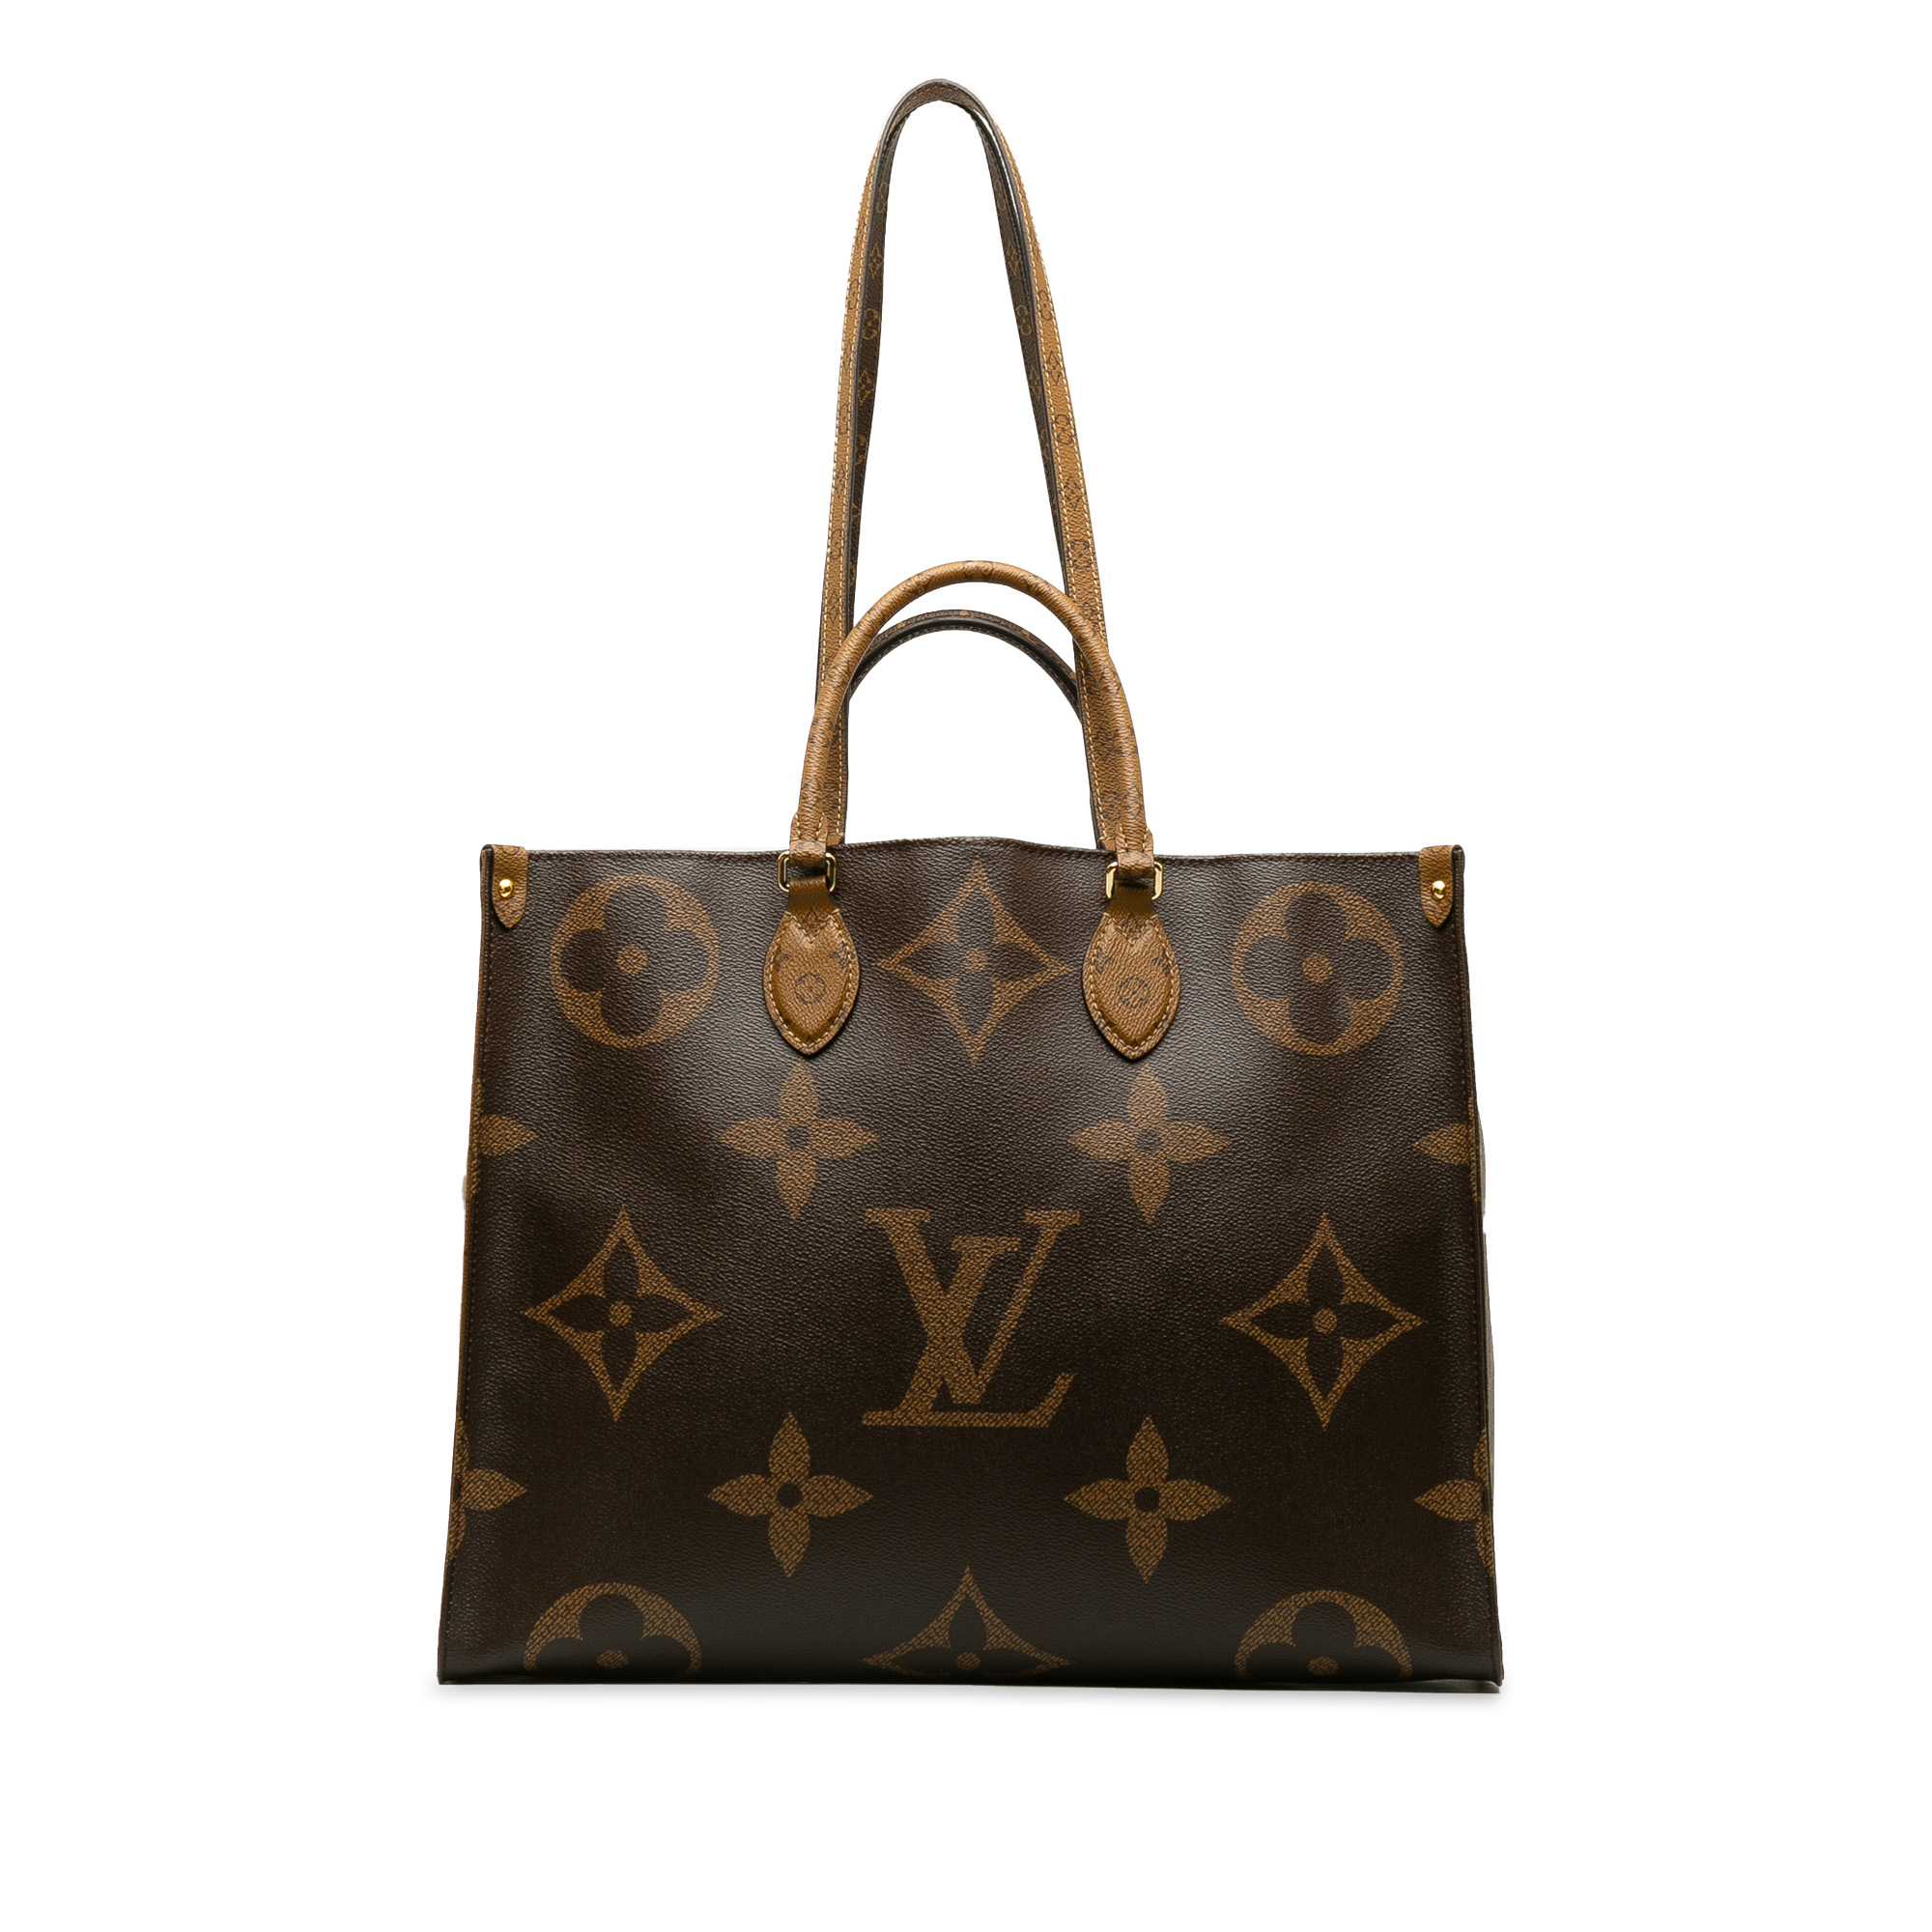 Monogram - Croissant - Vuitton - Louis Vuitton pre-owned Vernis